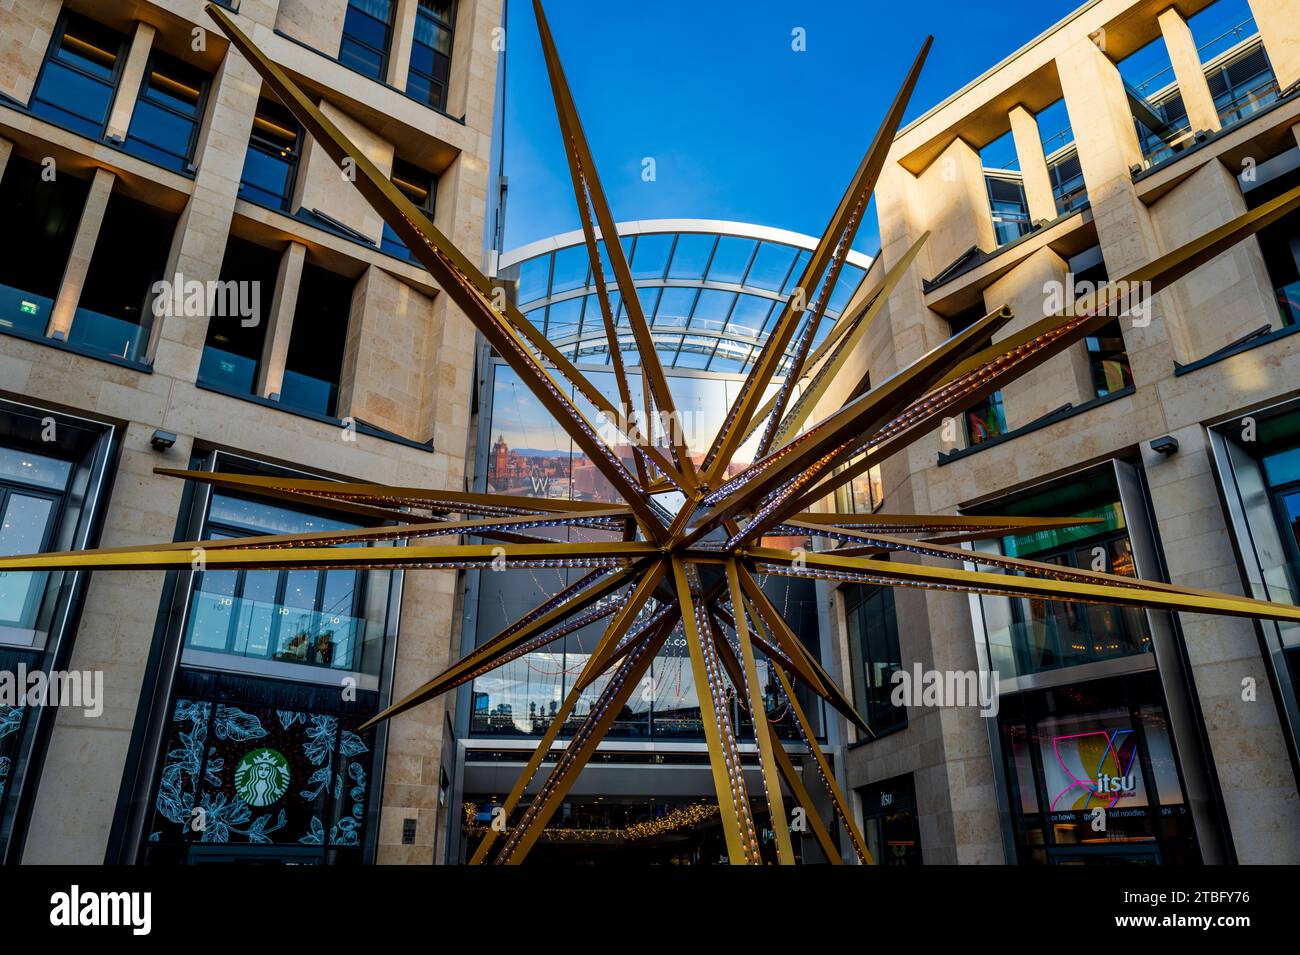 Einkaufszentrum St. James Quarter in Edinburgh, Schottland. Stockfoto